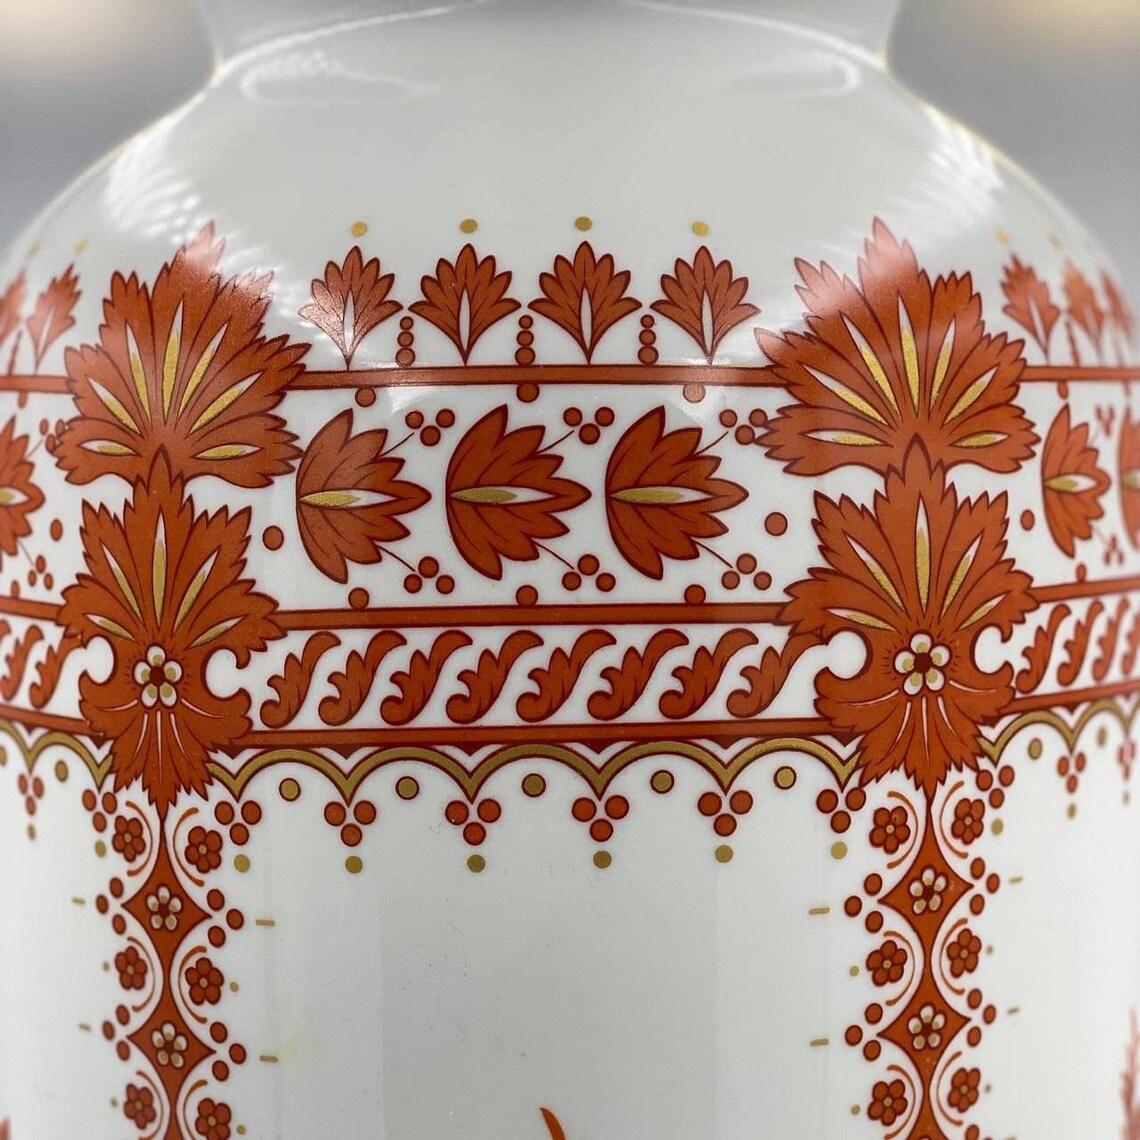 Krautheim
Sammlung von Wiesenblumen.
Wunderschöne antike Vase!
1884.
Knochenporzellan, handbemalt, vergoldet.

Aus der berühmtesten Porzellanmanufaktur Deutschlands, Krautheim.
Zum Verkauf steht eine wunderbare Sammlung Porzellanvase.

Die